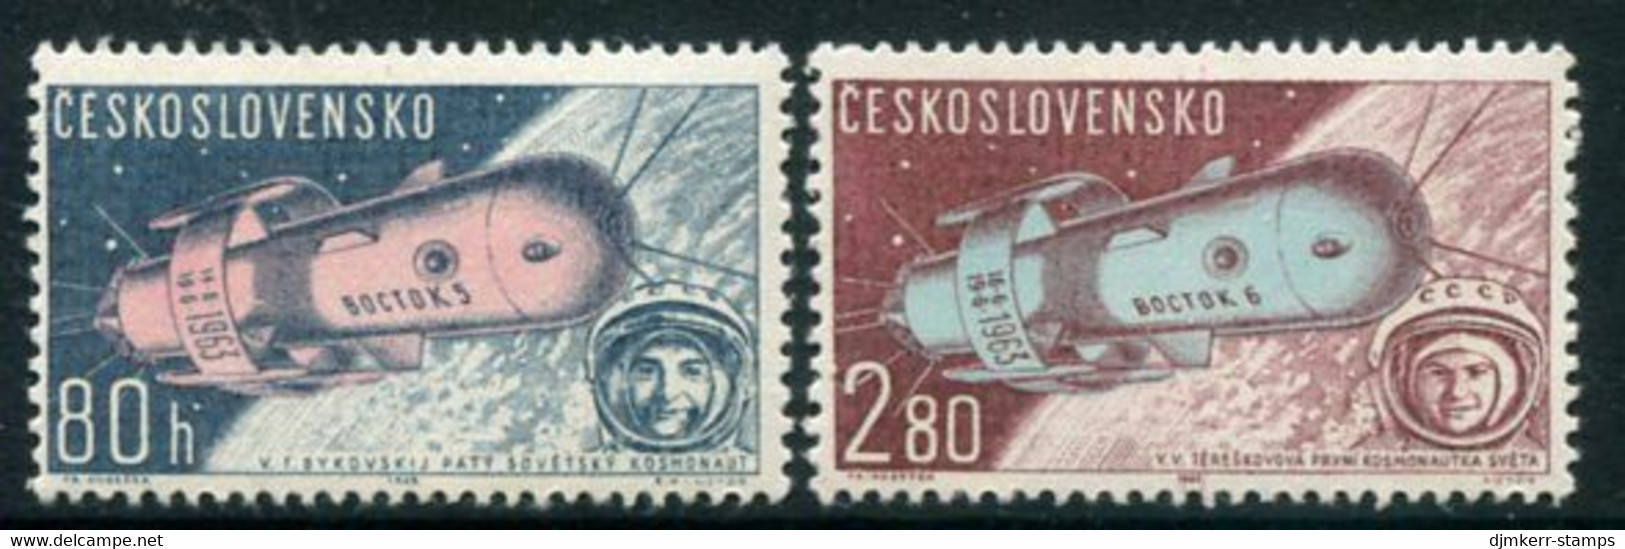 CZECHOSLOVAKIA 1963 Vostok 5 And 6 Space Flights MNH / **.  Michel 1413-14 - Ongebruikt